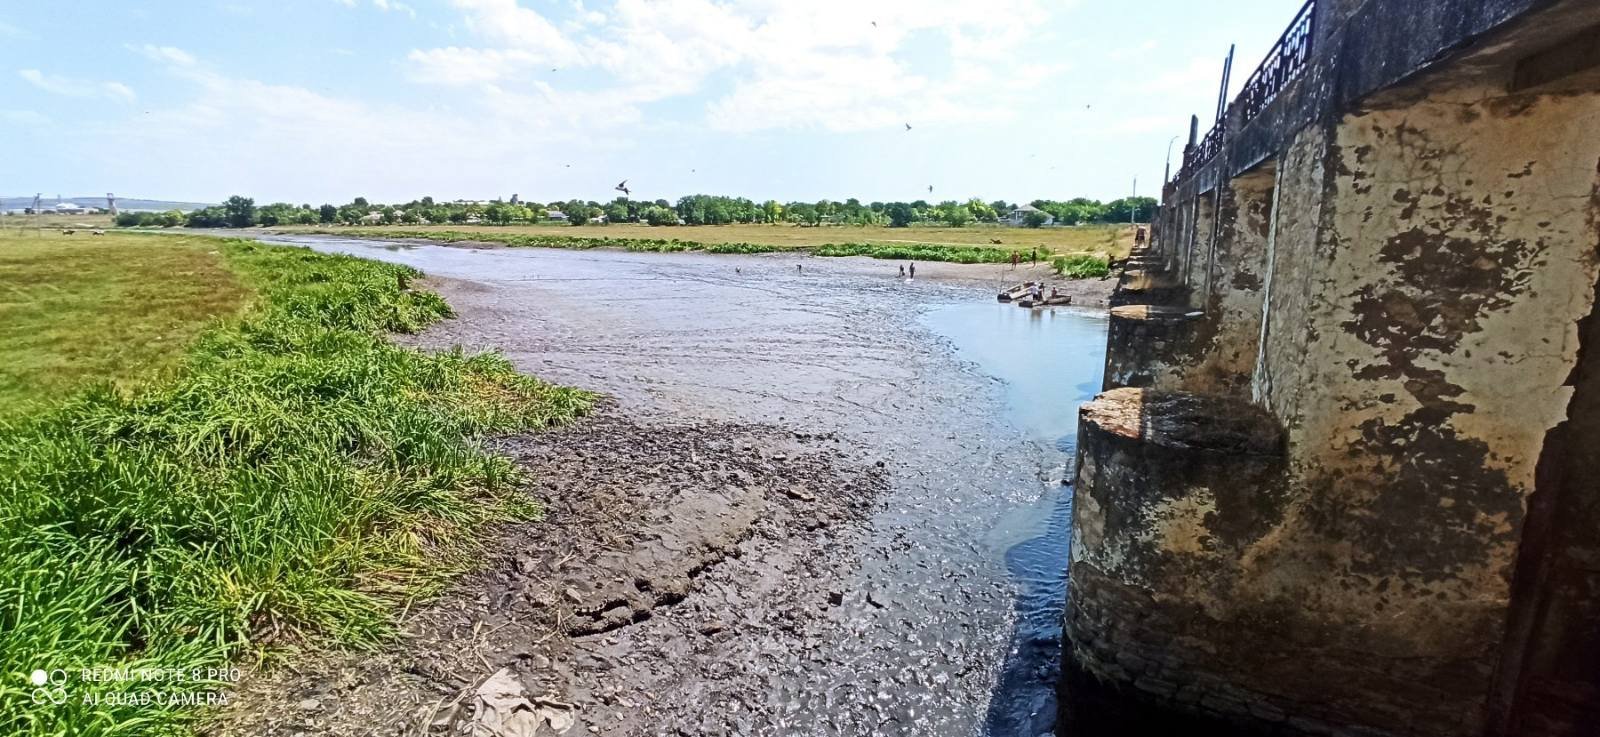 Люди перегородили реку. Река Реут в Молдове. Дамба на реке. Загрязнение реки Реут. Плотина перекрыла реку.